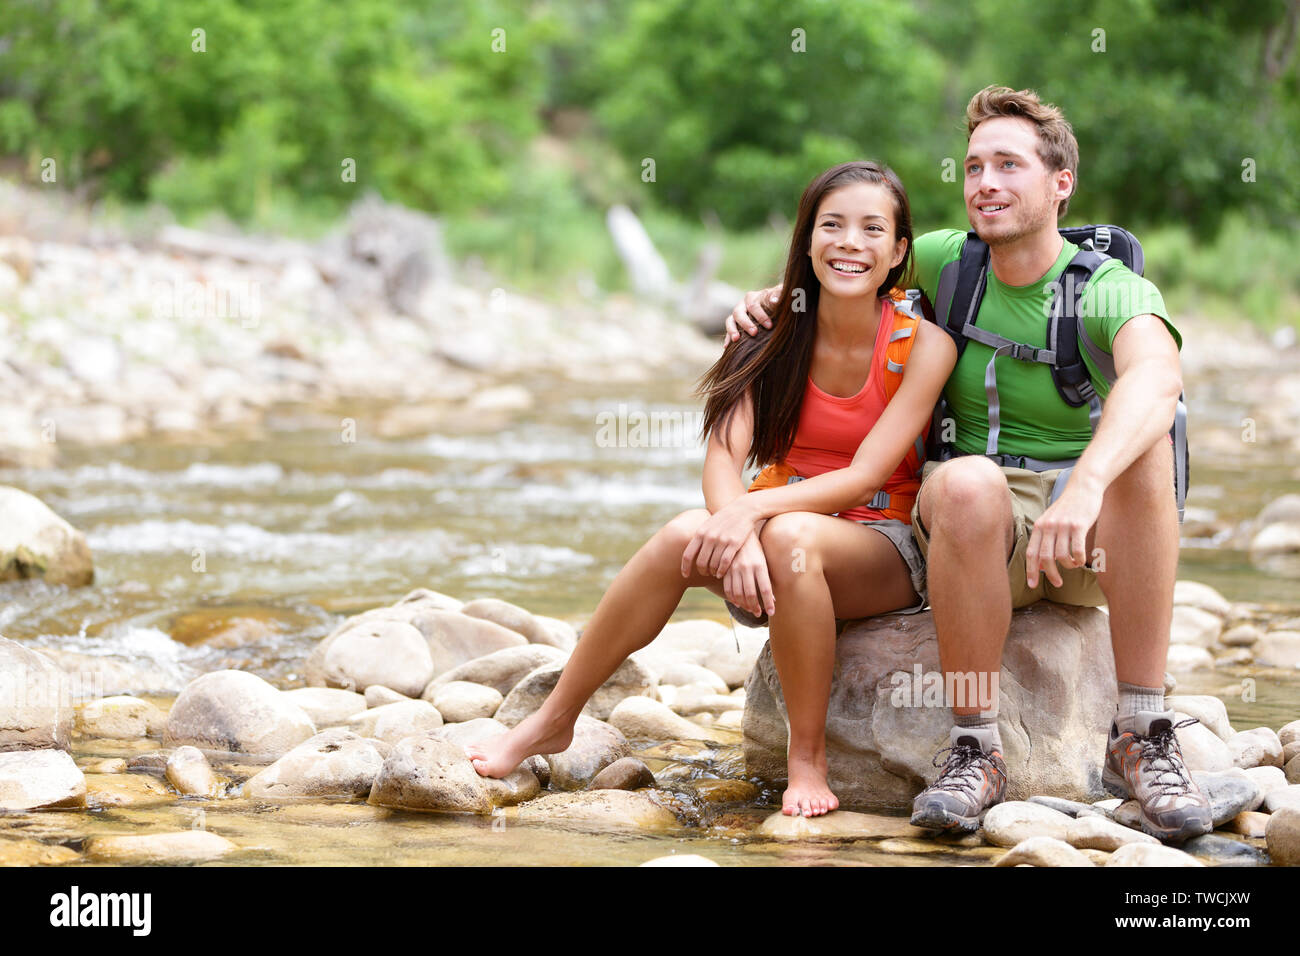 Wandern Paar - Wanderer im Zion National Park. Junge Frau und Mann Wanderer sitzen durch Wasser des Flusses Creek genießen Blick lächelte glücklich. Junges Paar trekking, entspannend nach der Wanderung, Utah, USA. Stockfoto